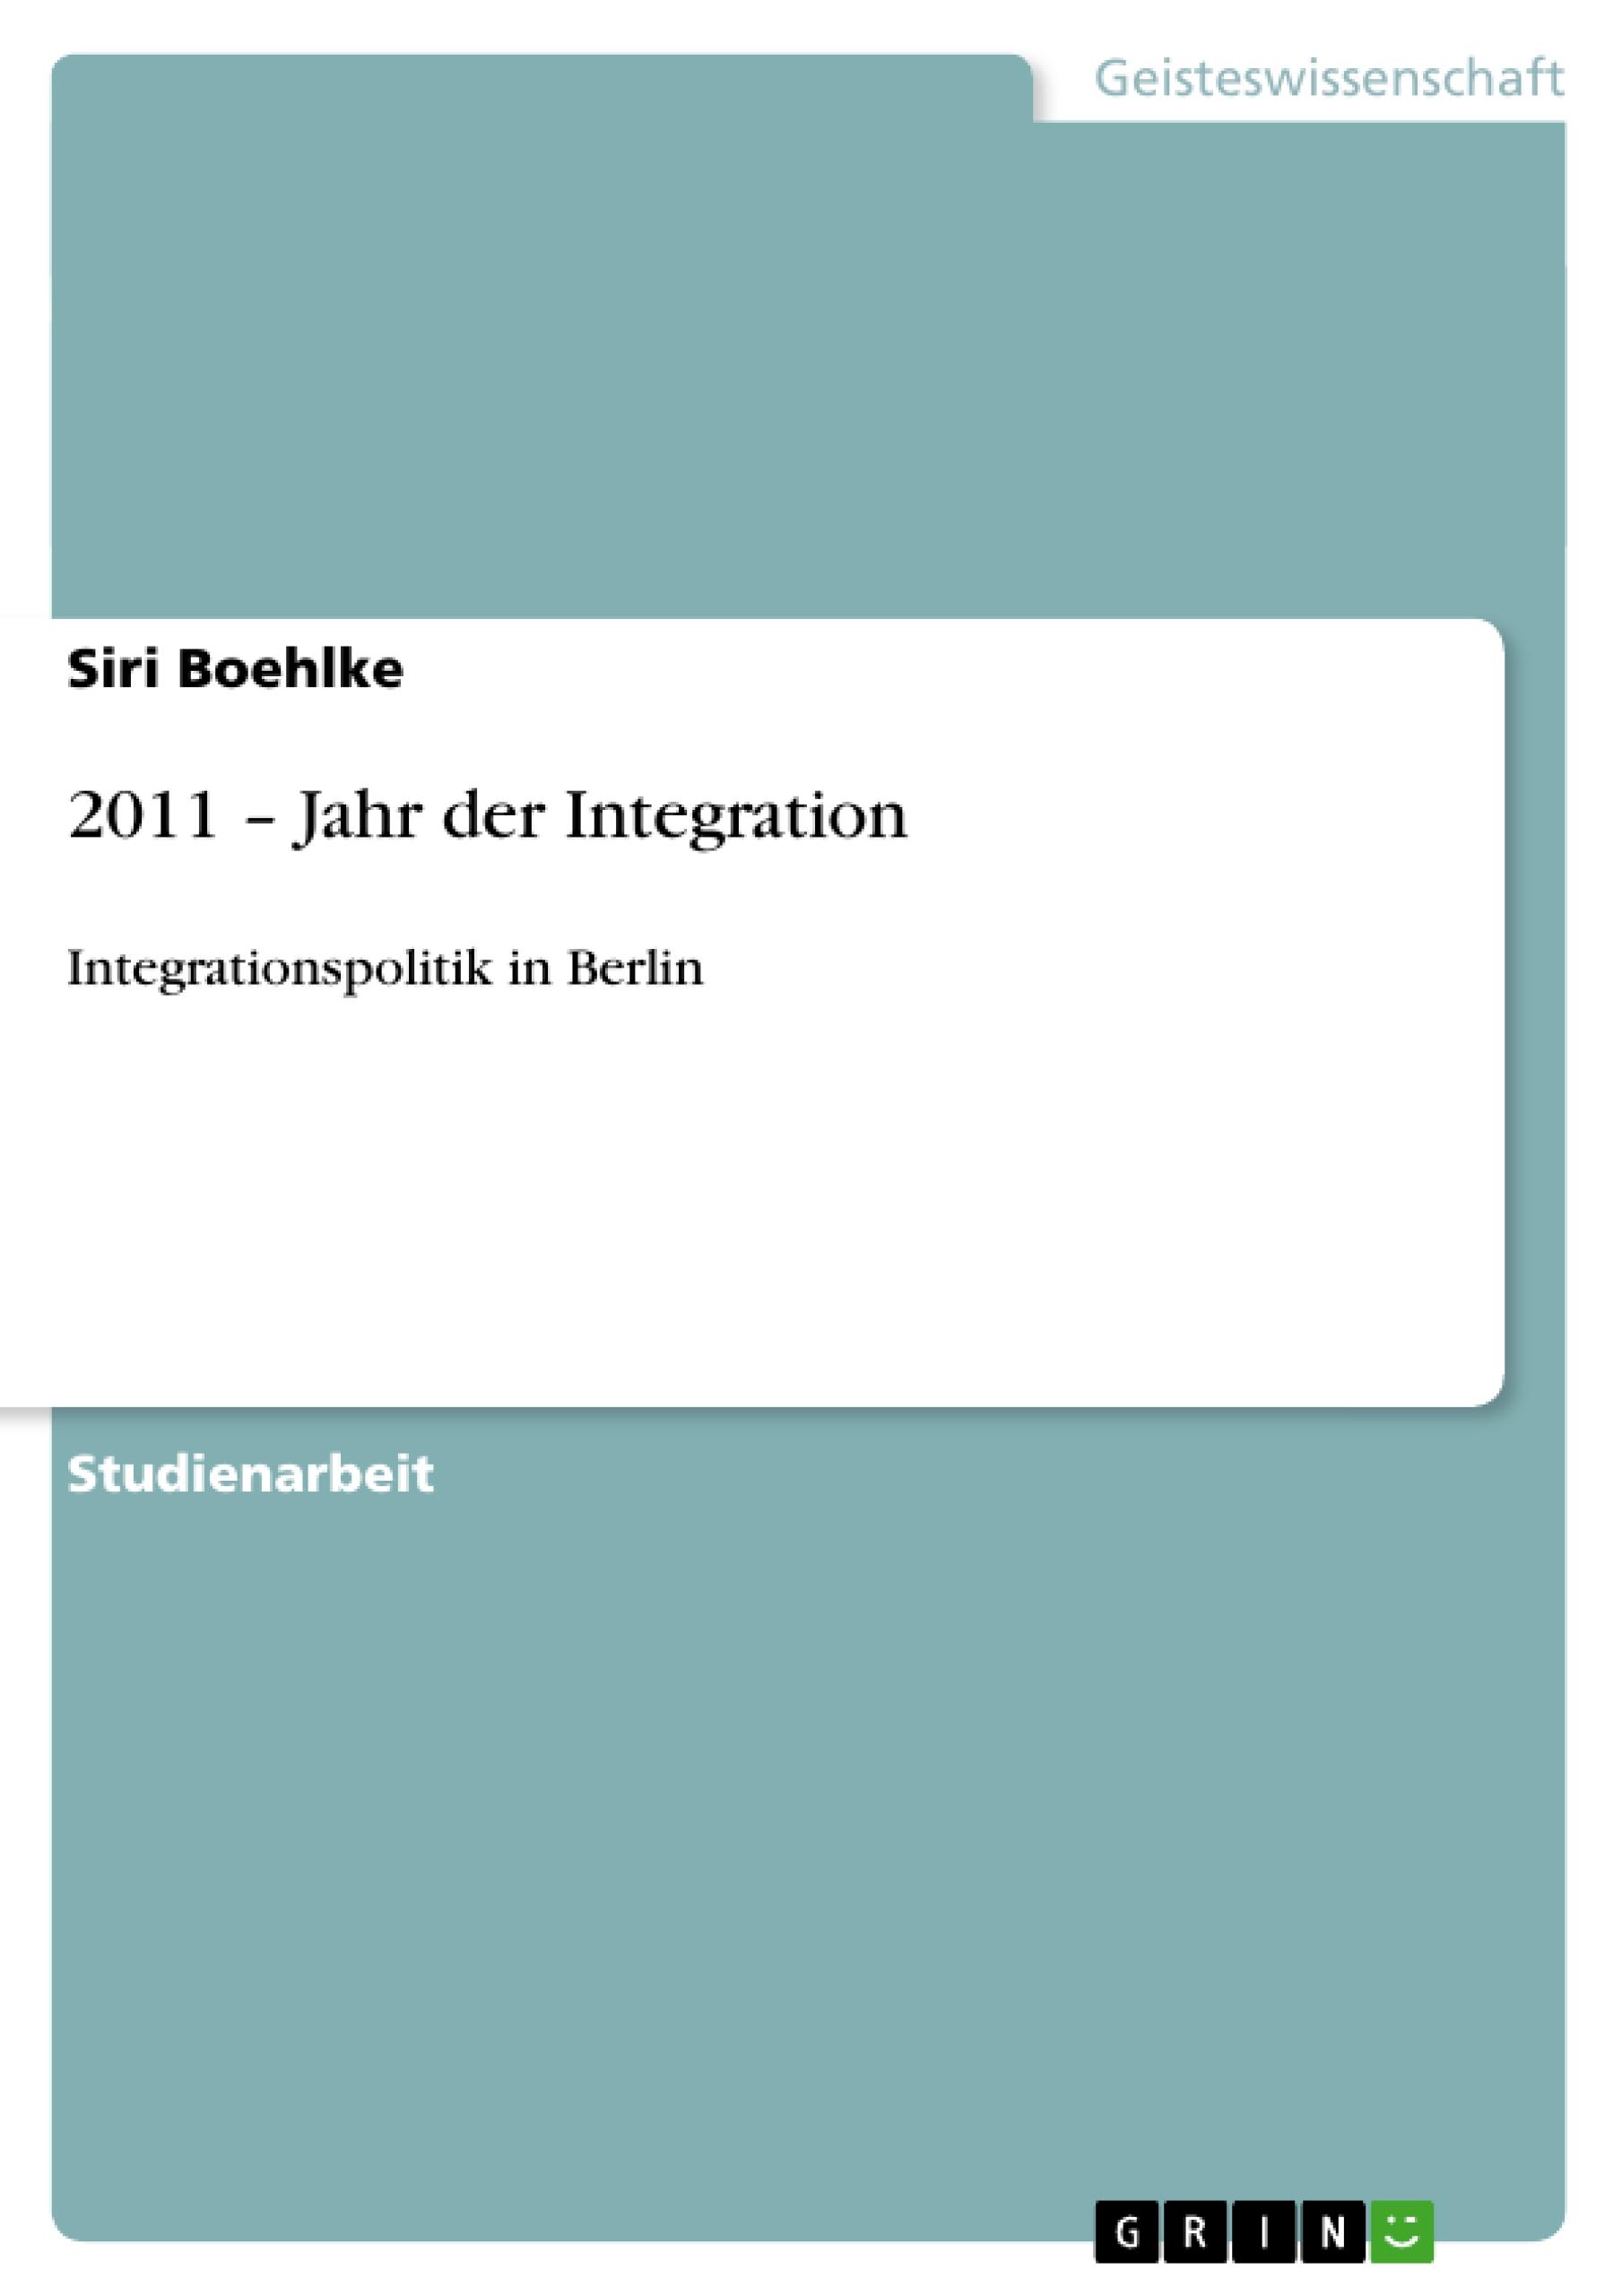 2011 - Jahr der Integration - Boehlke, Siri